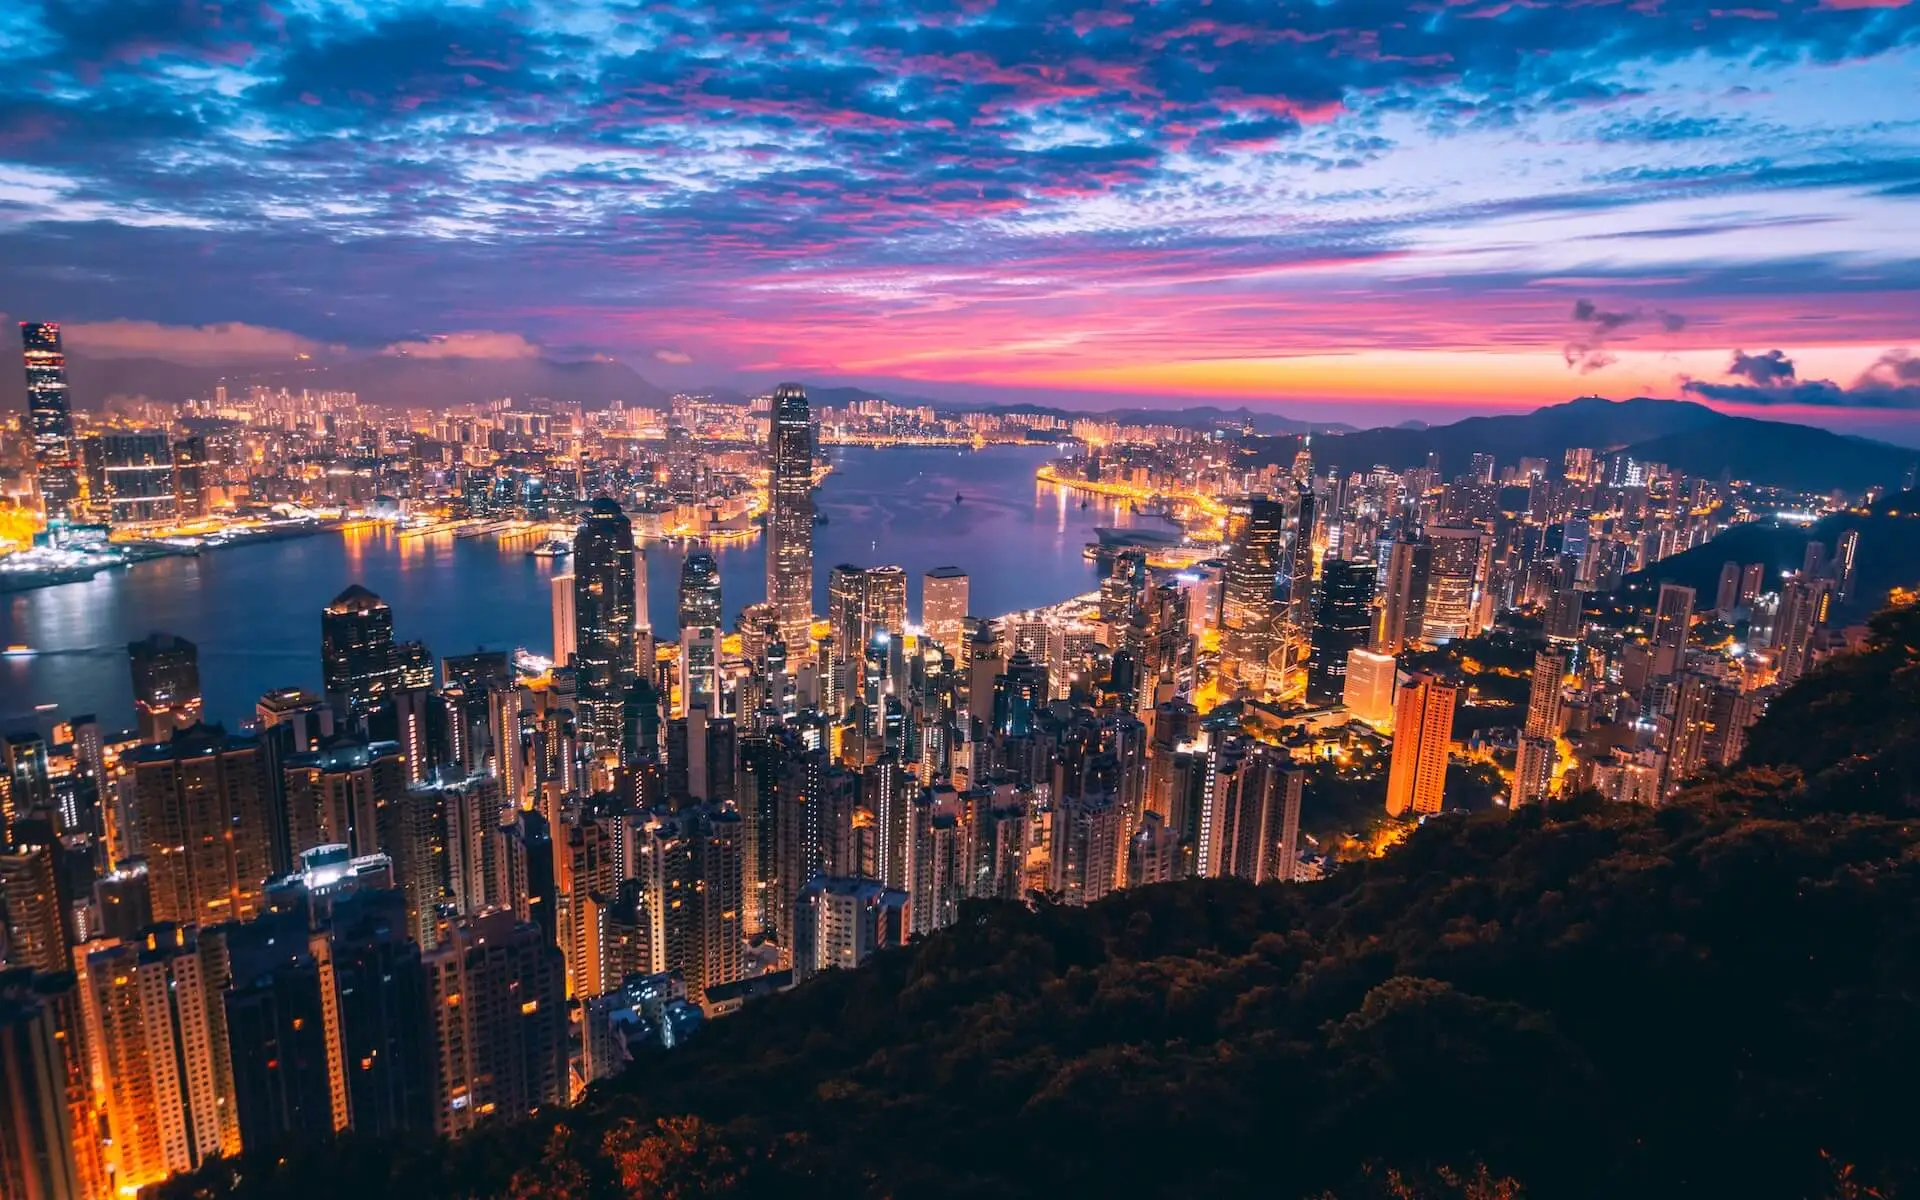 توفر هونغ كونغ للأشخاص سرعة قصوى للإنترنت وخدمات عالية الجودة عبر المنطقة